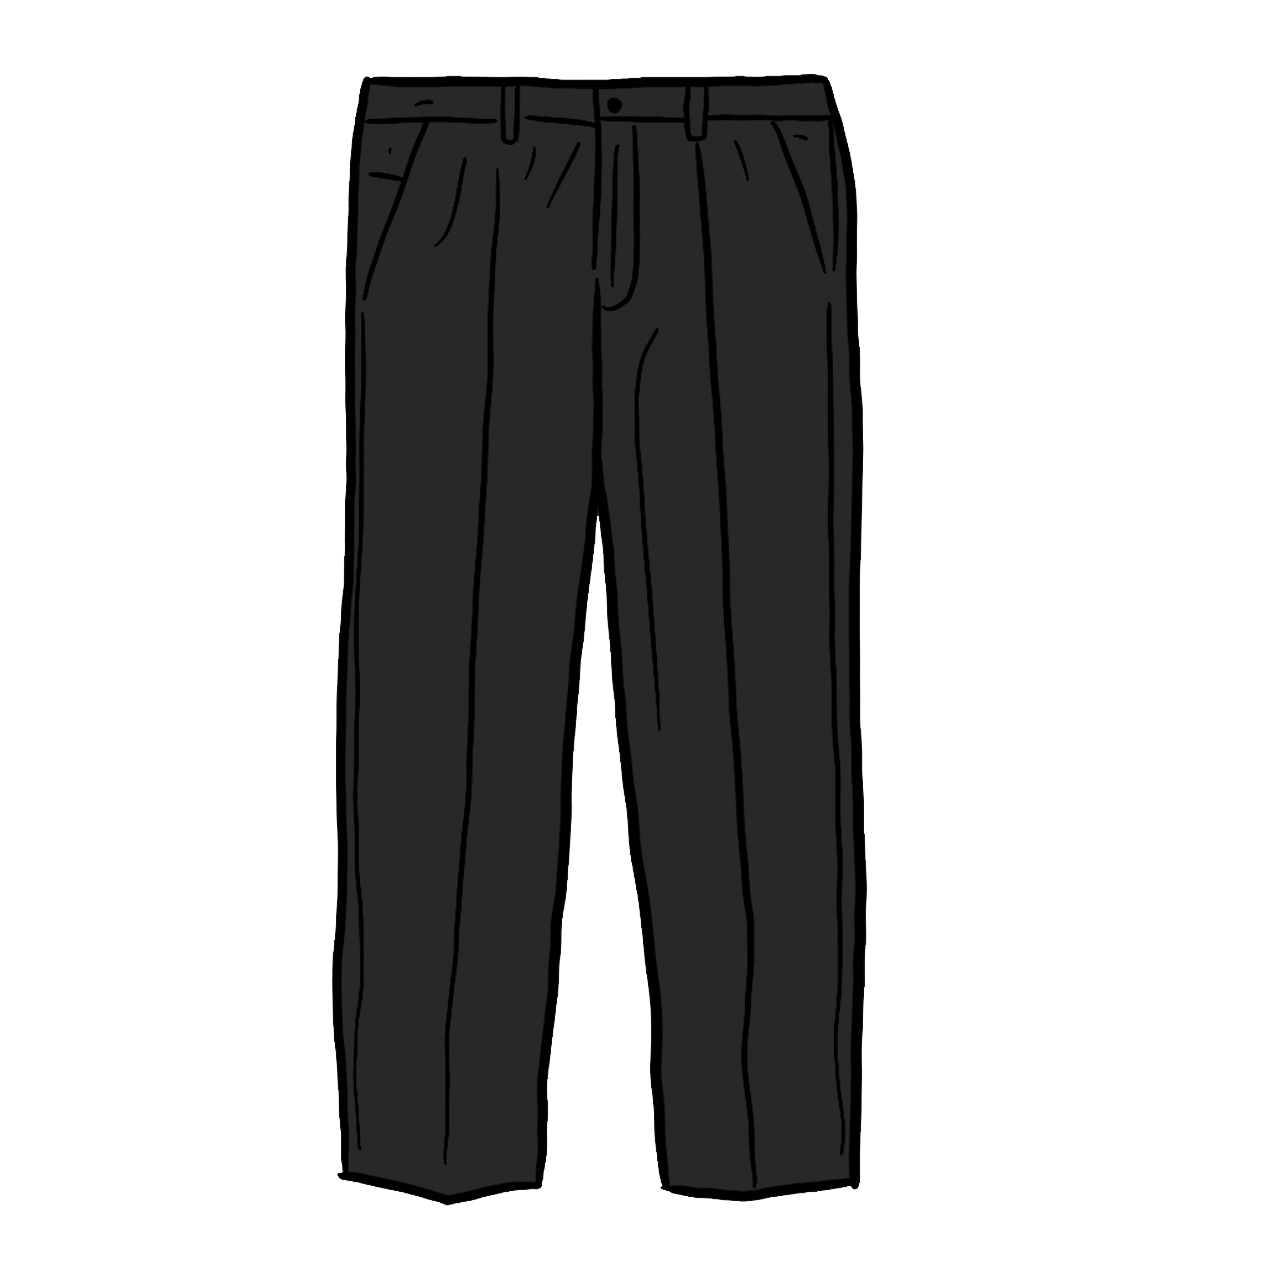 Pleat Pants Uniform Pocket Suit, suit, clothing Accessories, formal Wear,  active Pants png | PNGWing